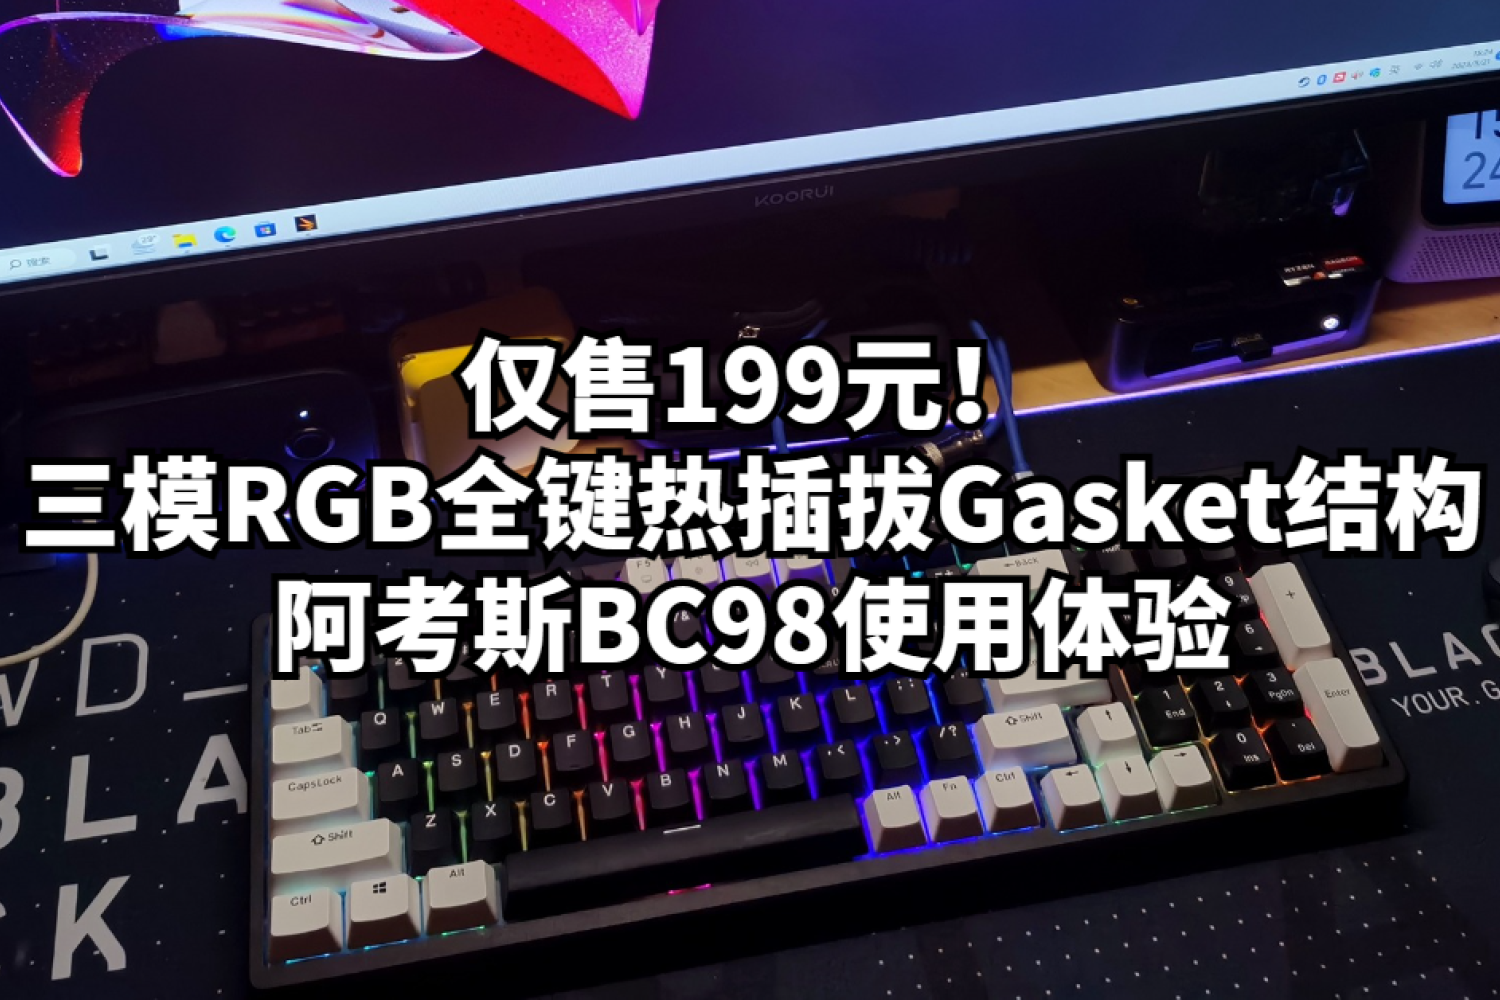 仅售199元三模RGB热插拔Gasket结构阿考斯BC98